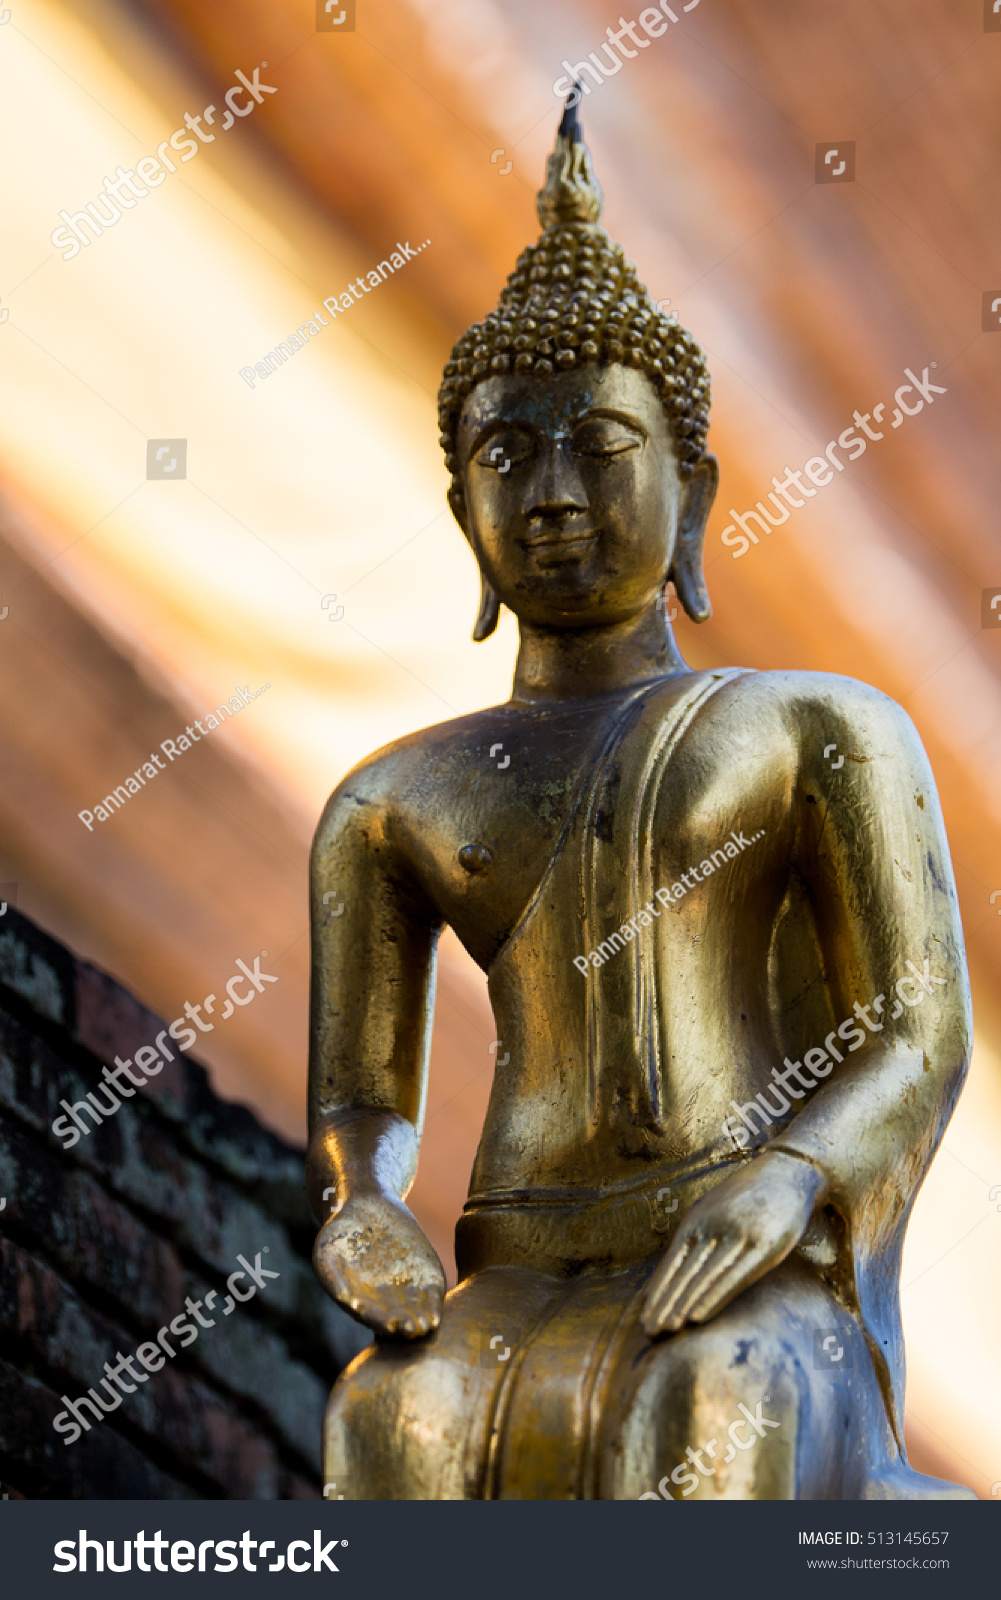 buddha age